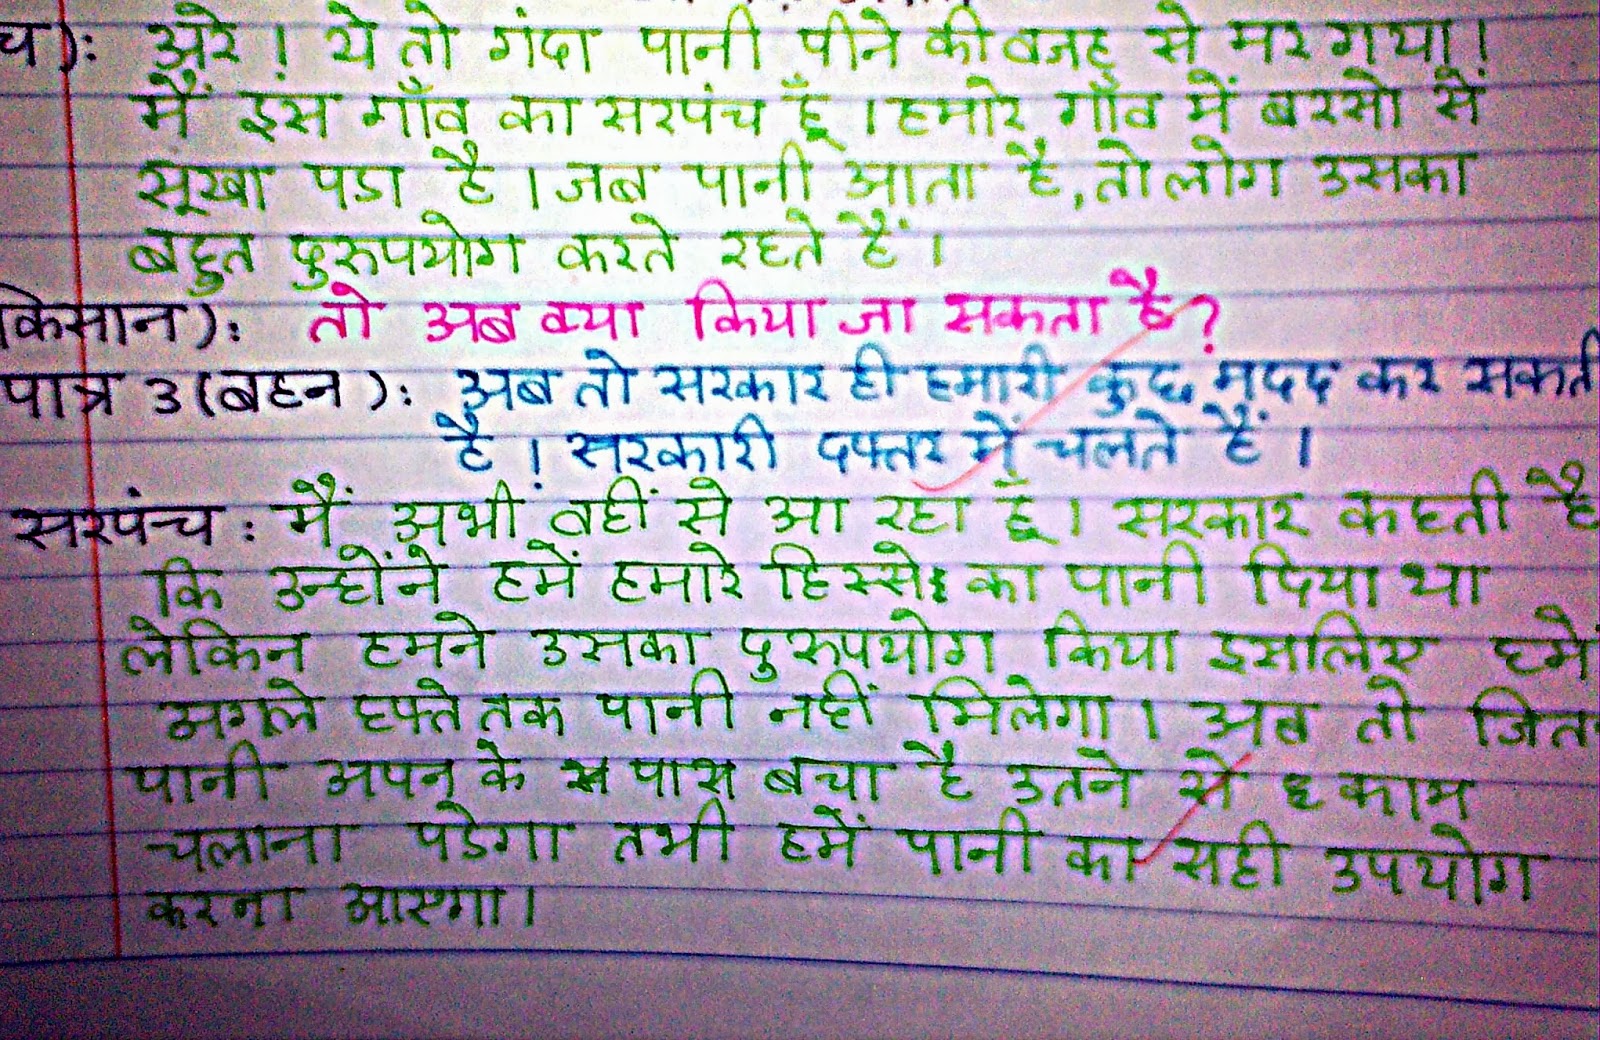 nukkad natak hindi script pdf